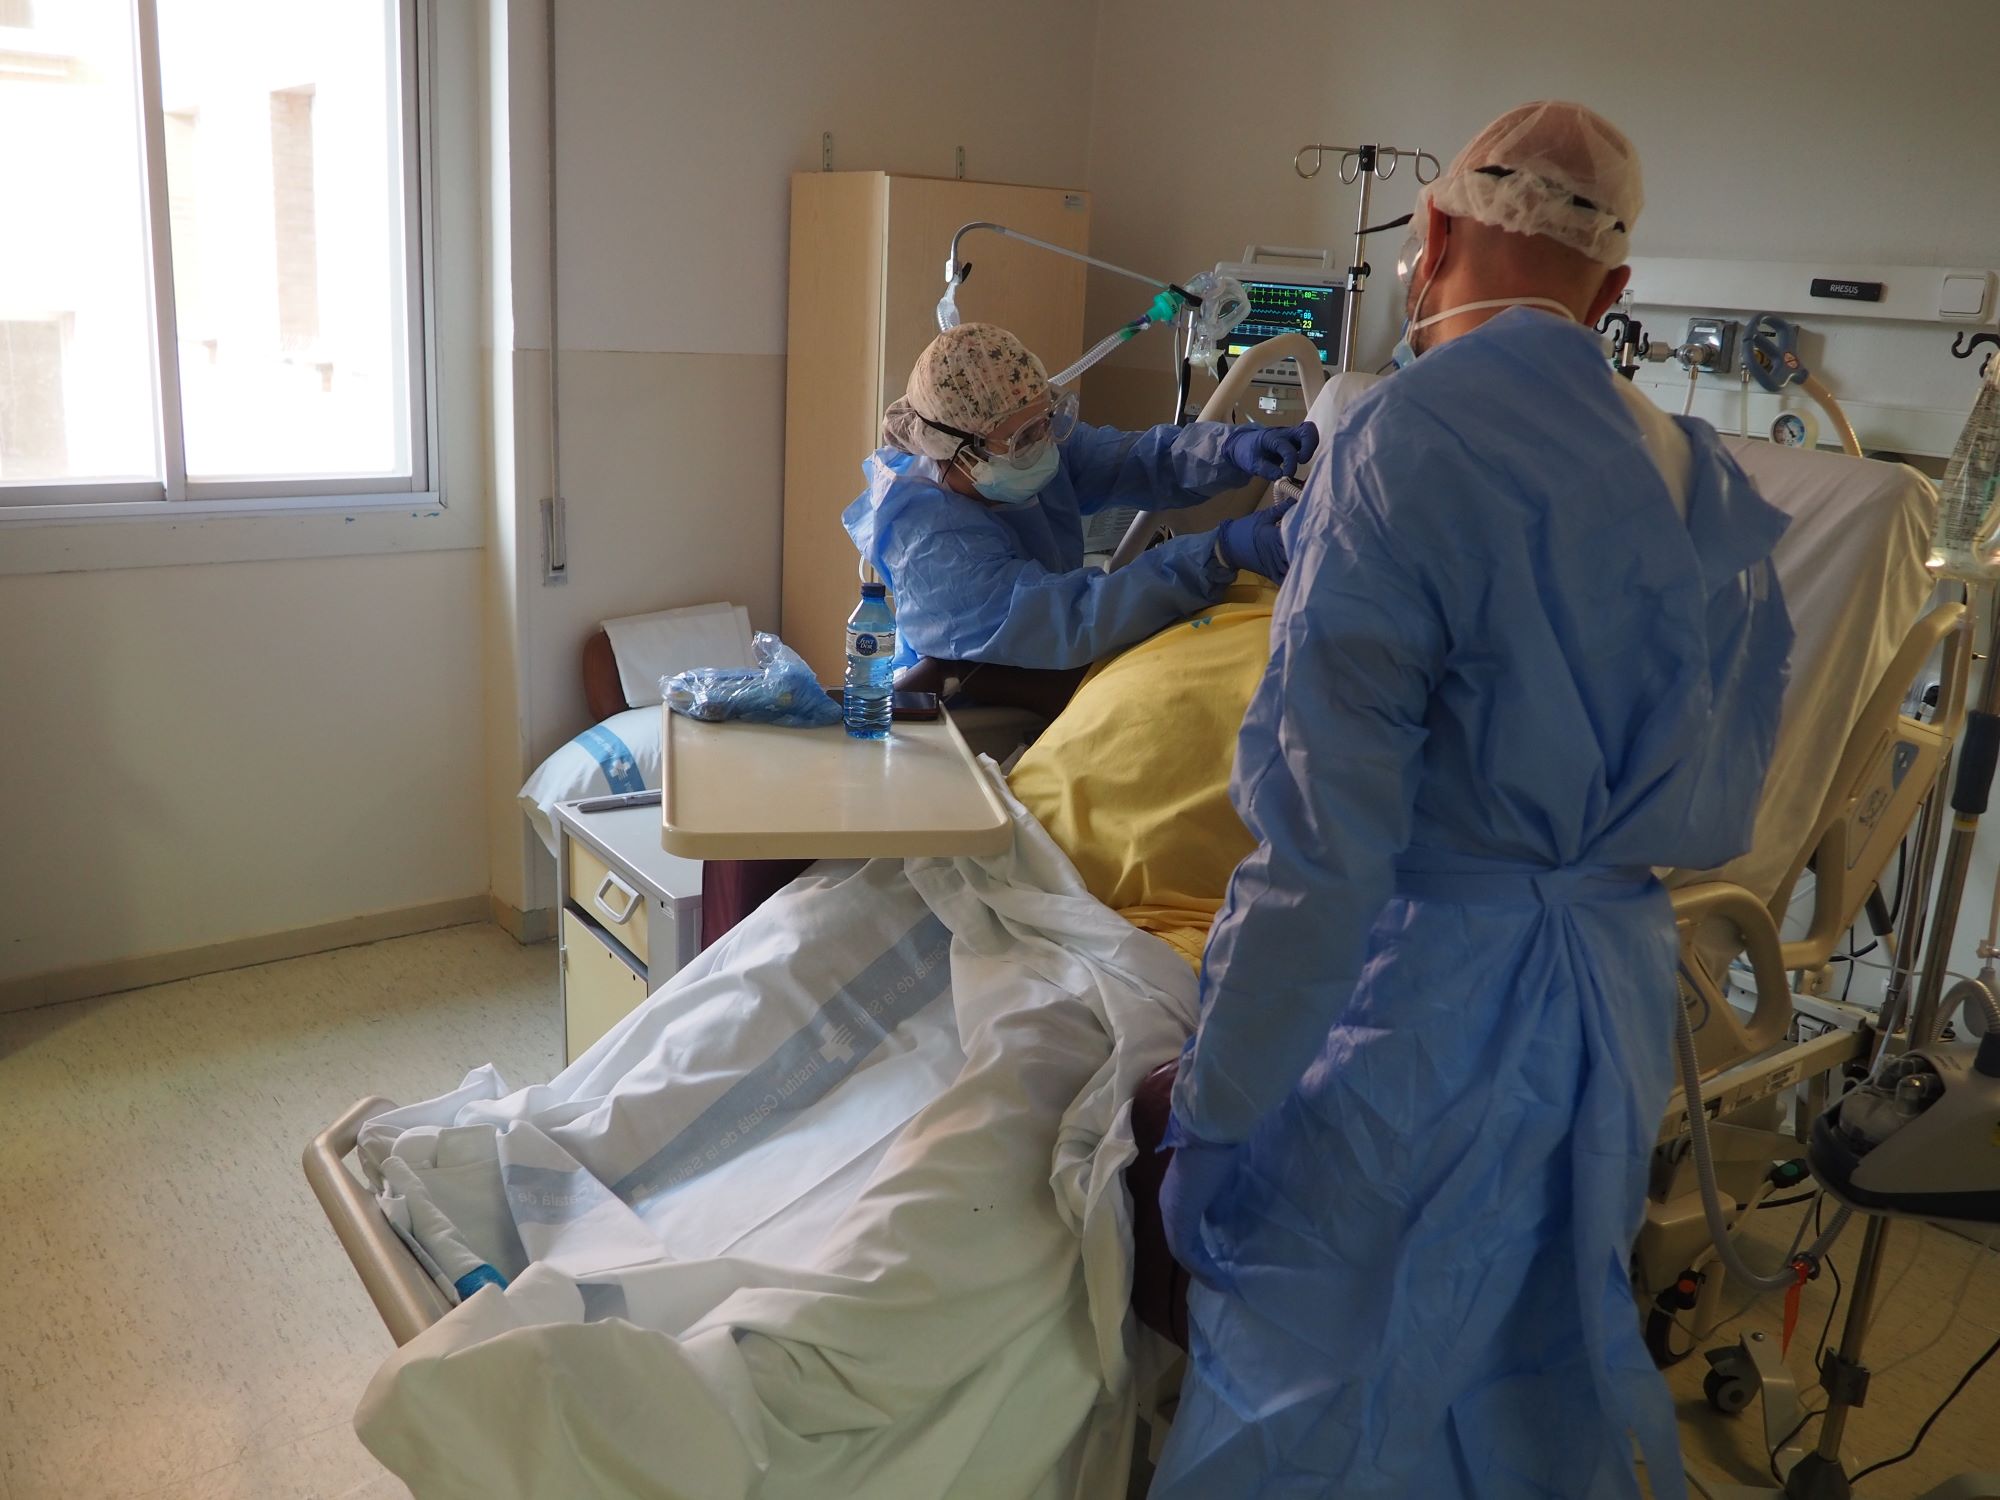 Un pacient és atès per dos professionals sanitaris a la UCRI,  el desembre de l'any passat